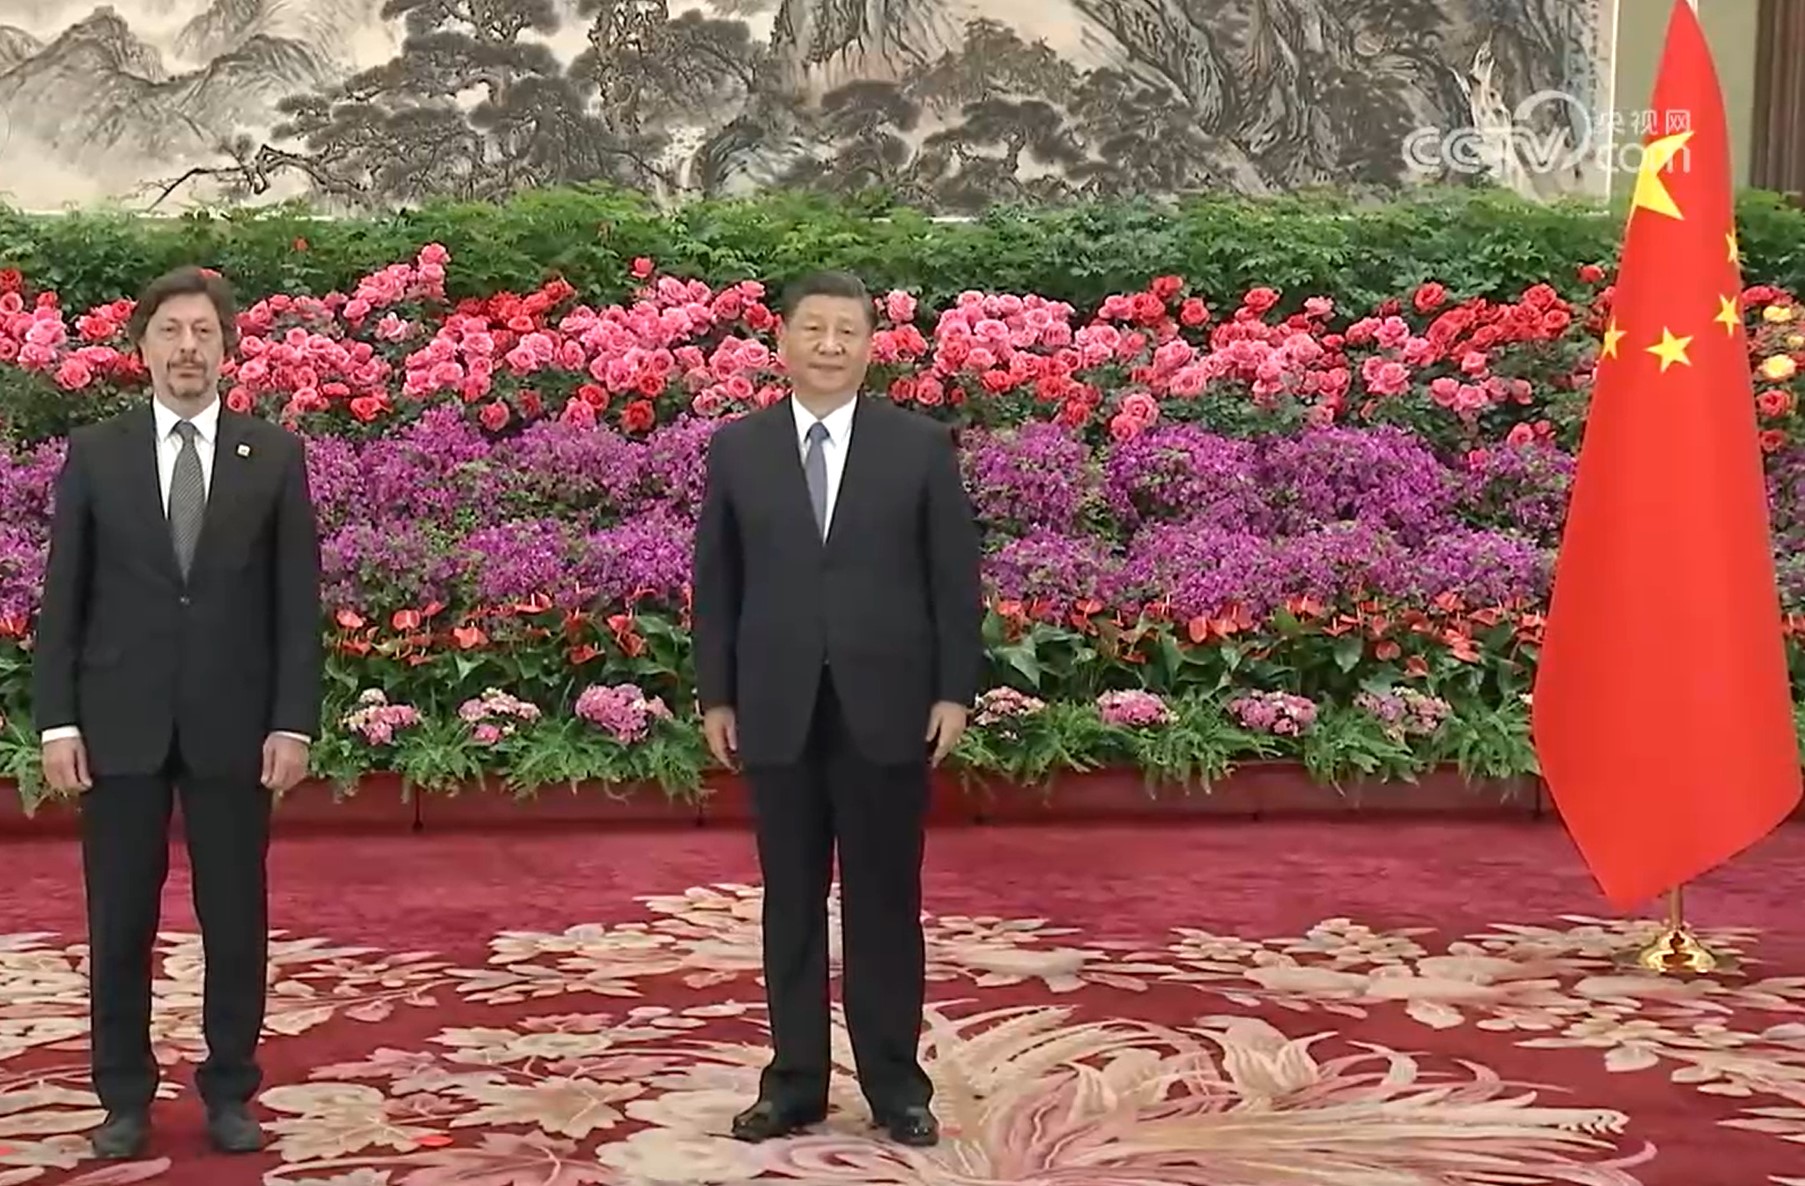 L’ambasciatore di San Marino ha presentato le lettere credenziali al presidente Cinese Xi Jinping